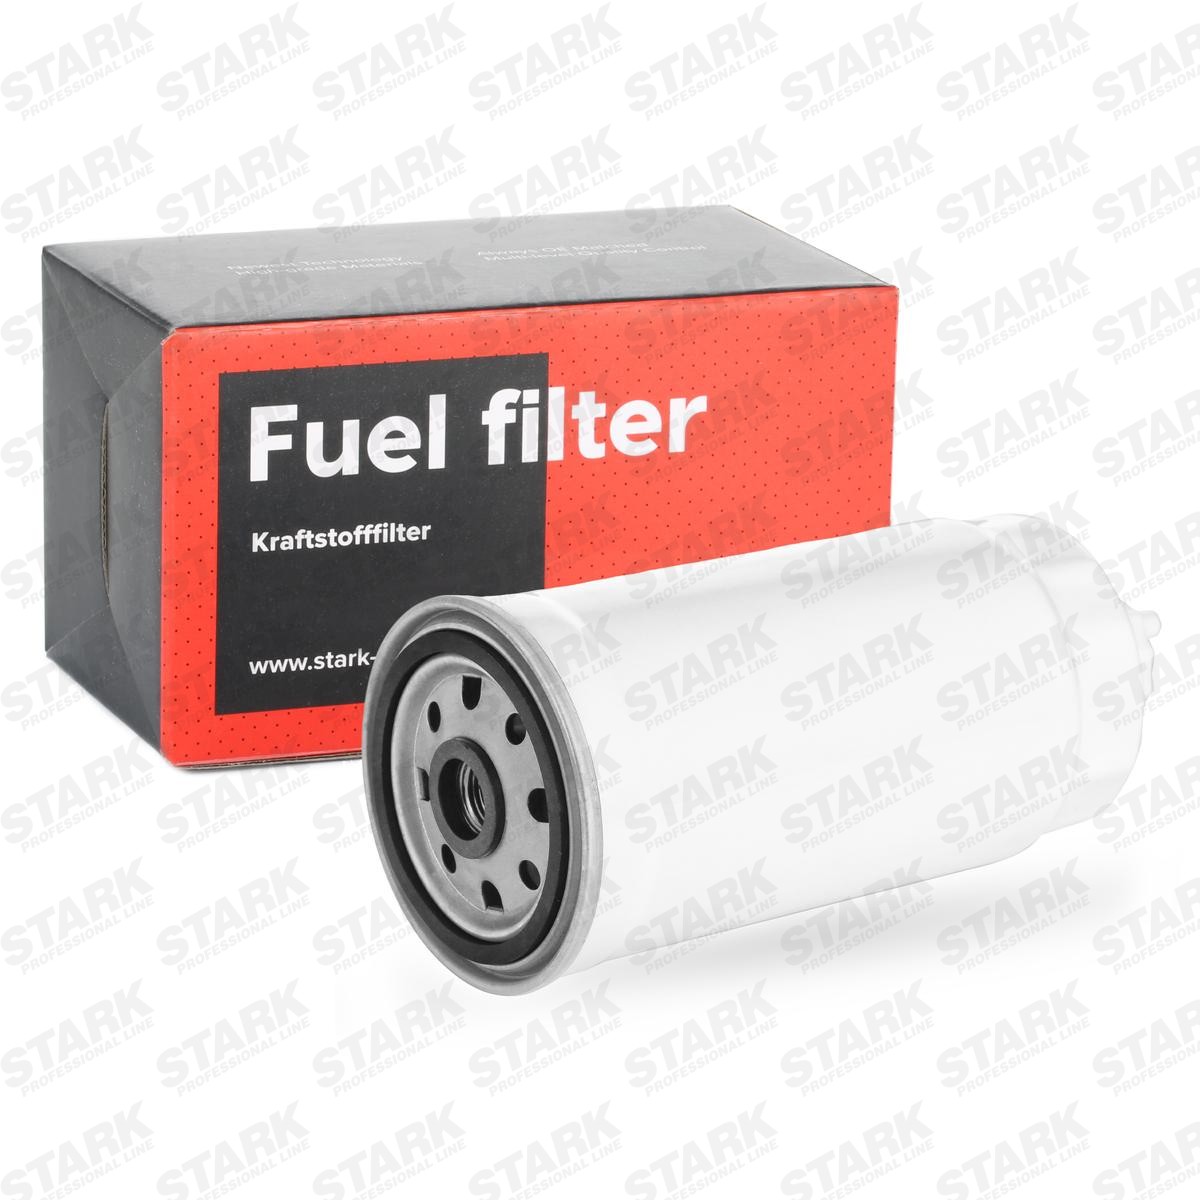 STARK SKFF-0870021 Fuel filter Filter Insert, Spin-on Filter